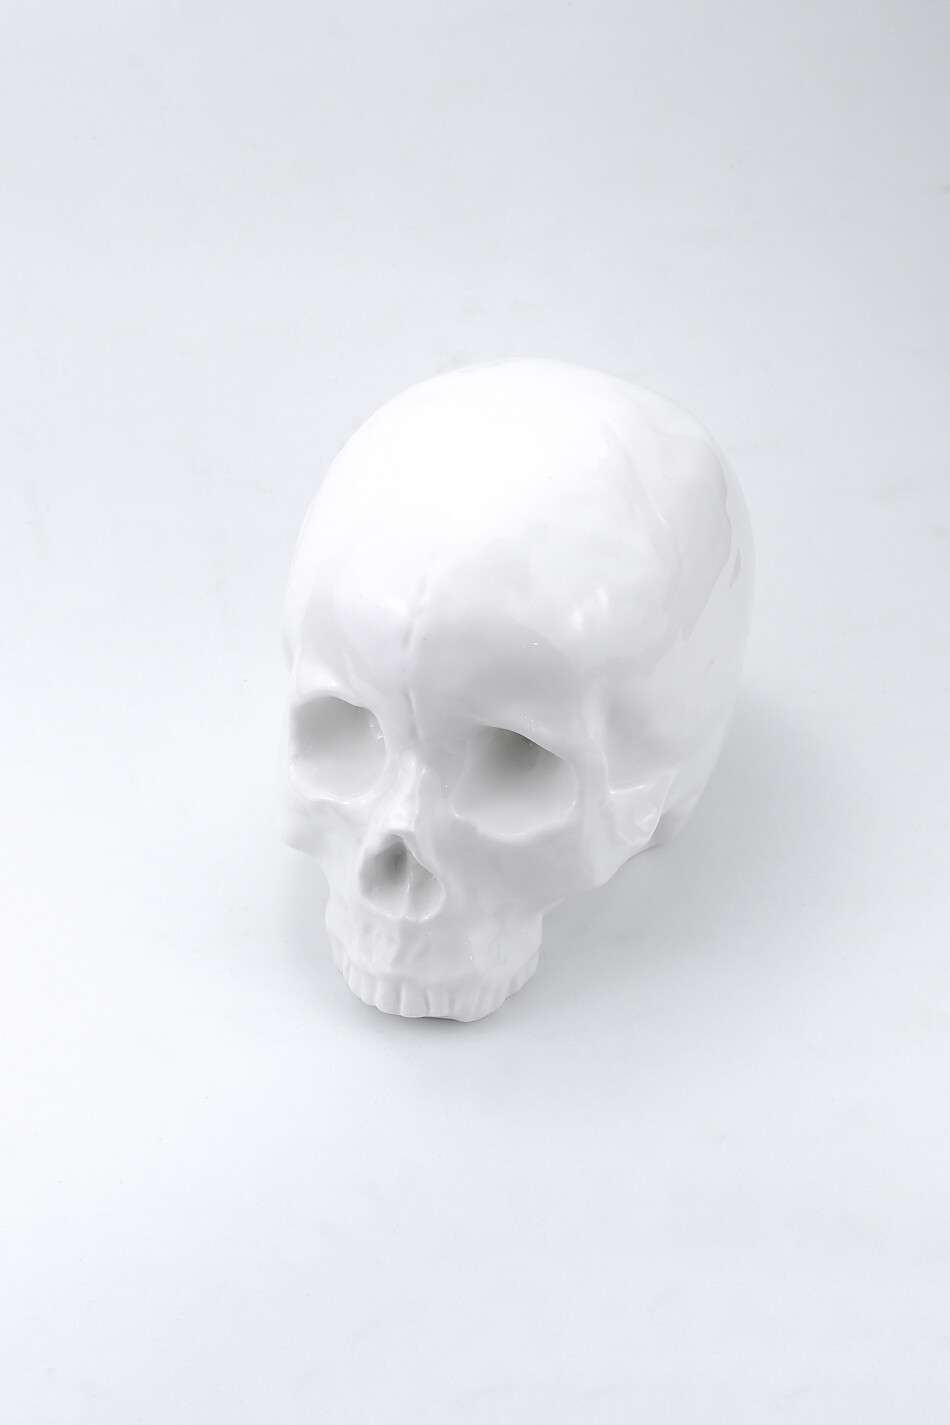 The large white skull